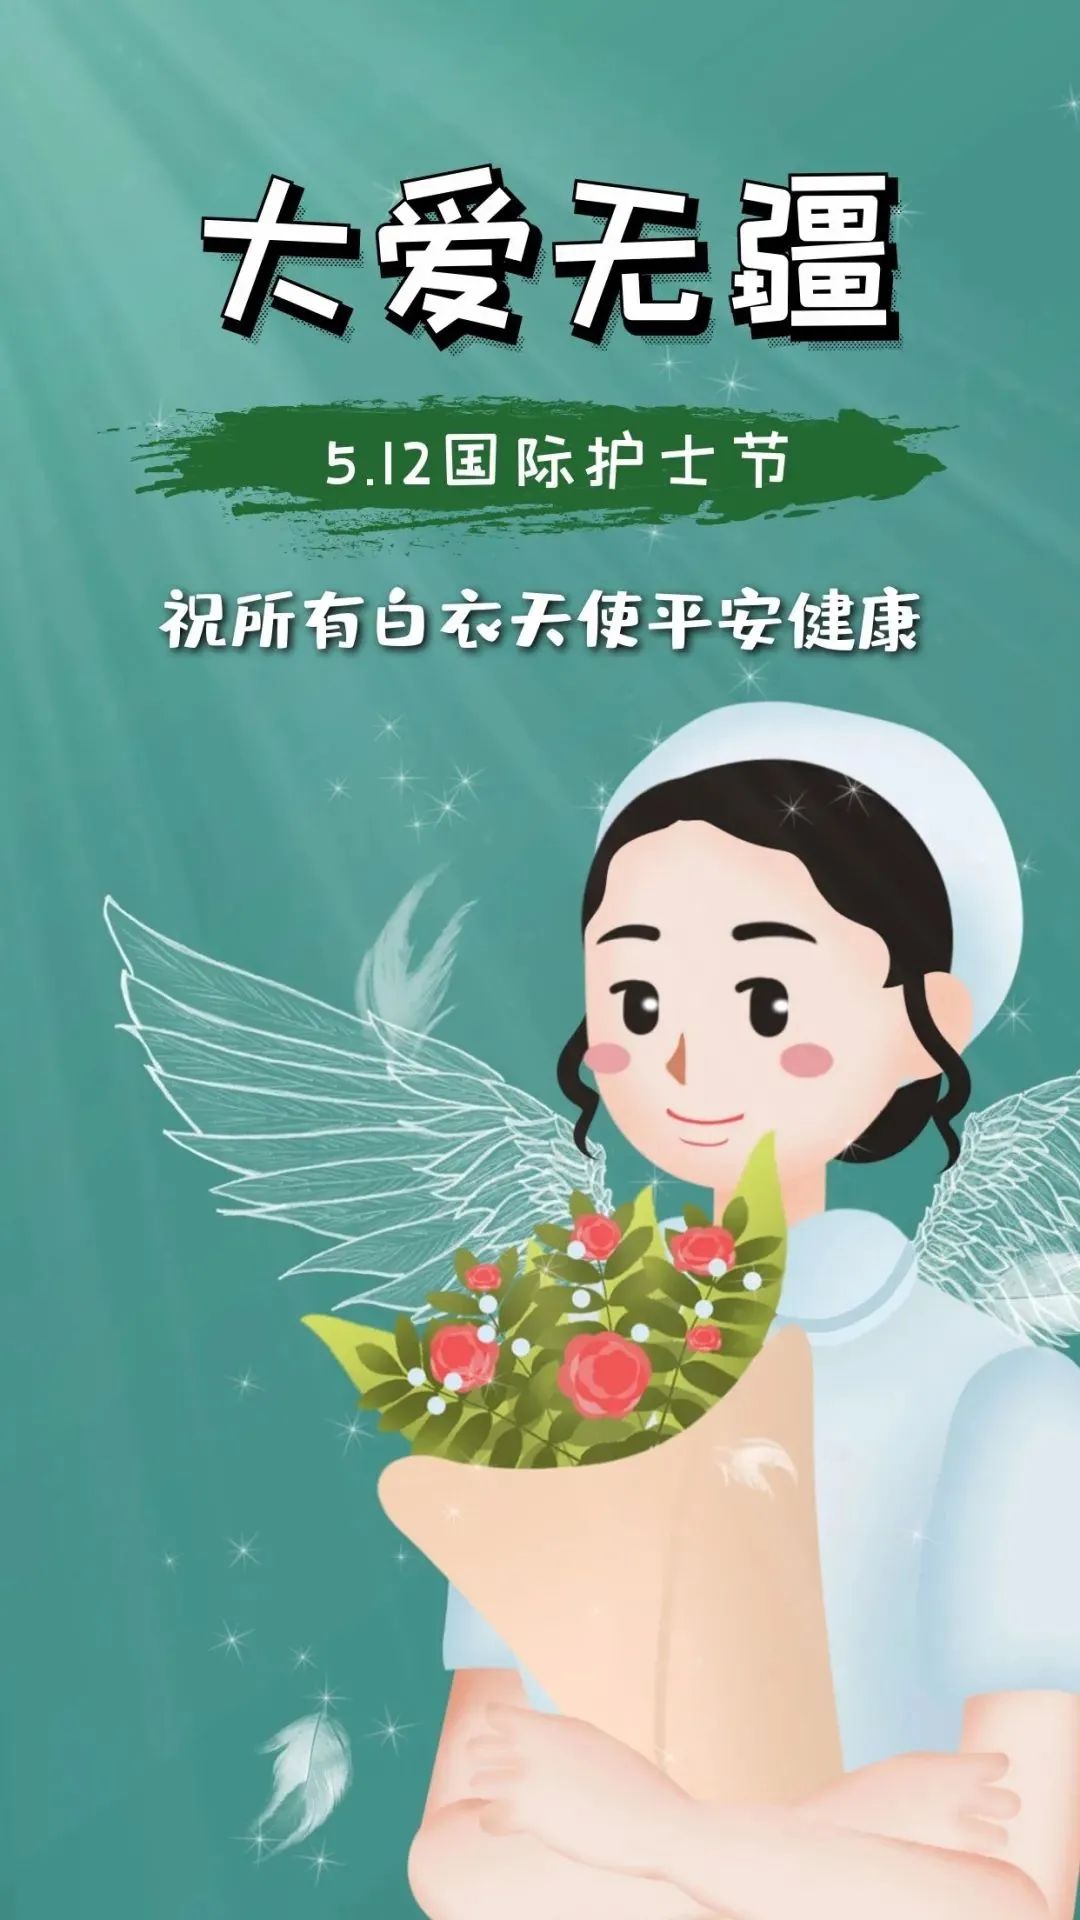 512国际护士节寄语守护生命的天使